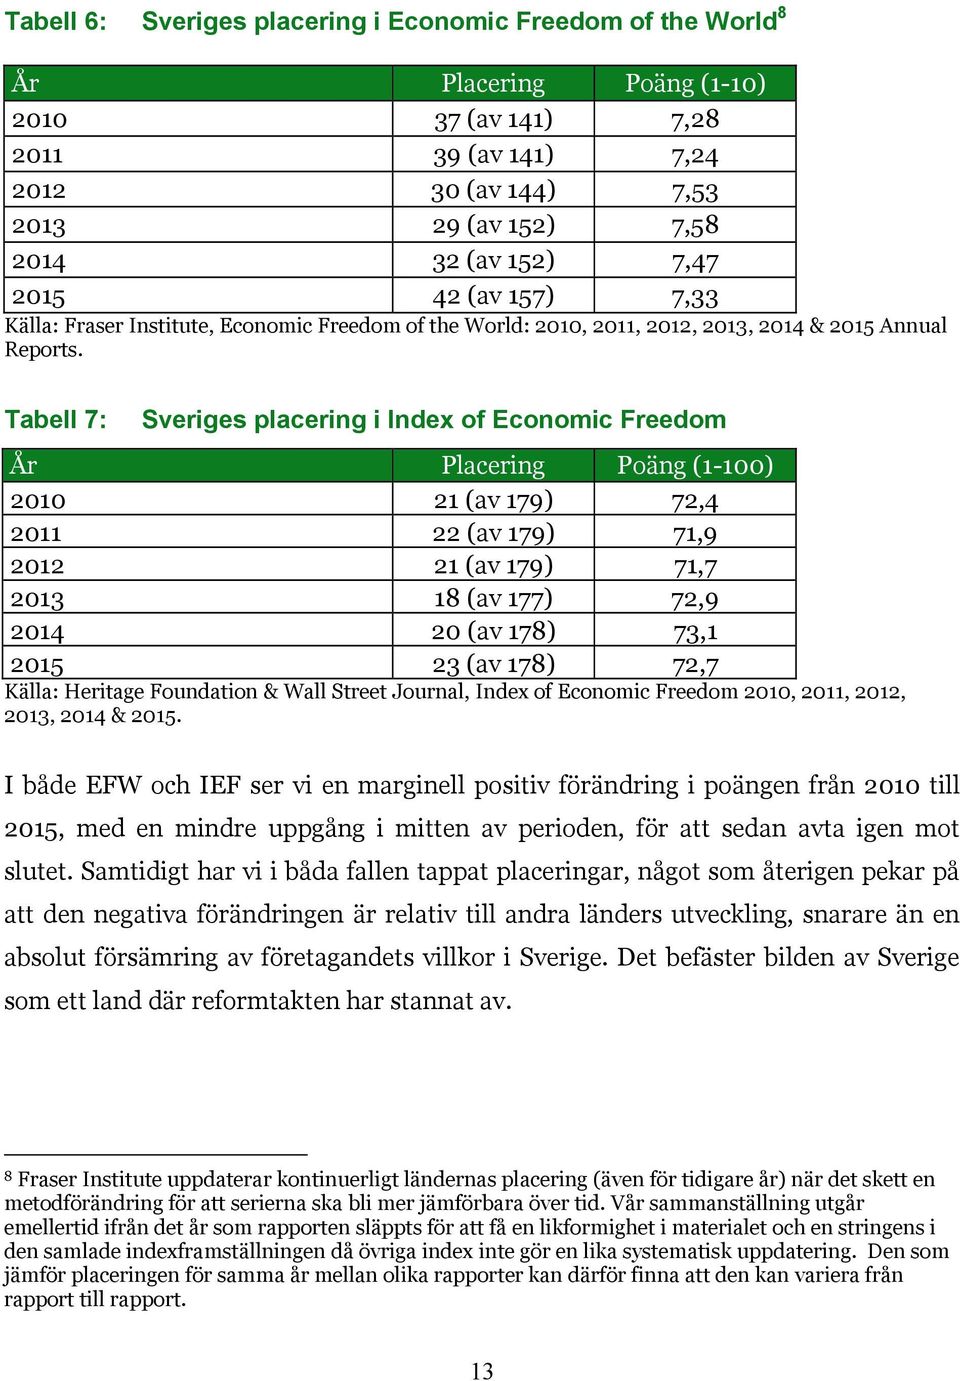 Tabell 7: Sveriges placering i Index of Economic Freedom År Placering Poäng (1-100) 2010 21 (av 179) 72,4 2011 22 (av 179) 71,9 2012 21 (av 179) 71,7 2013 18 (av 177) 72,9 2014 20 (av 178) 73,1 2015